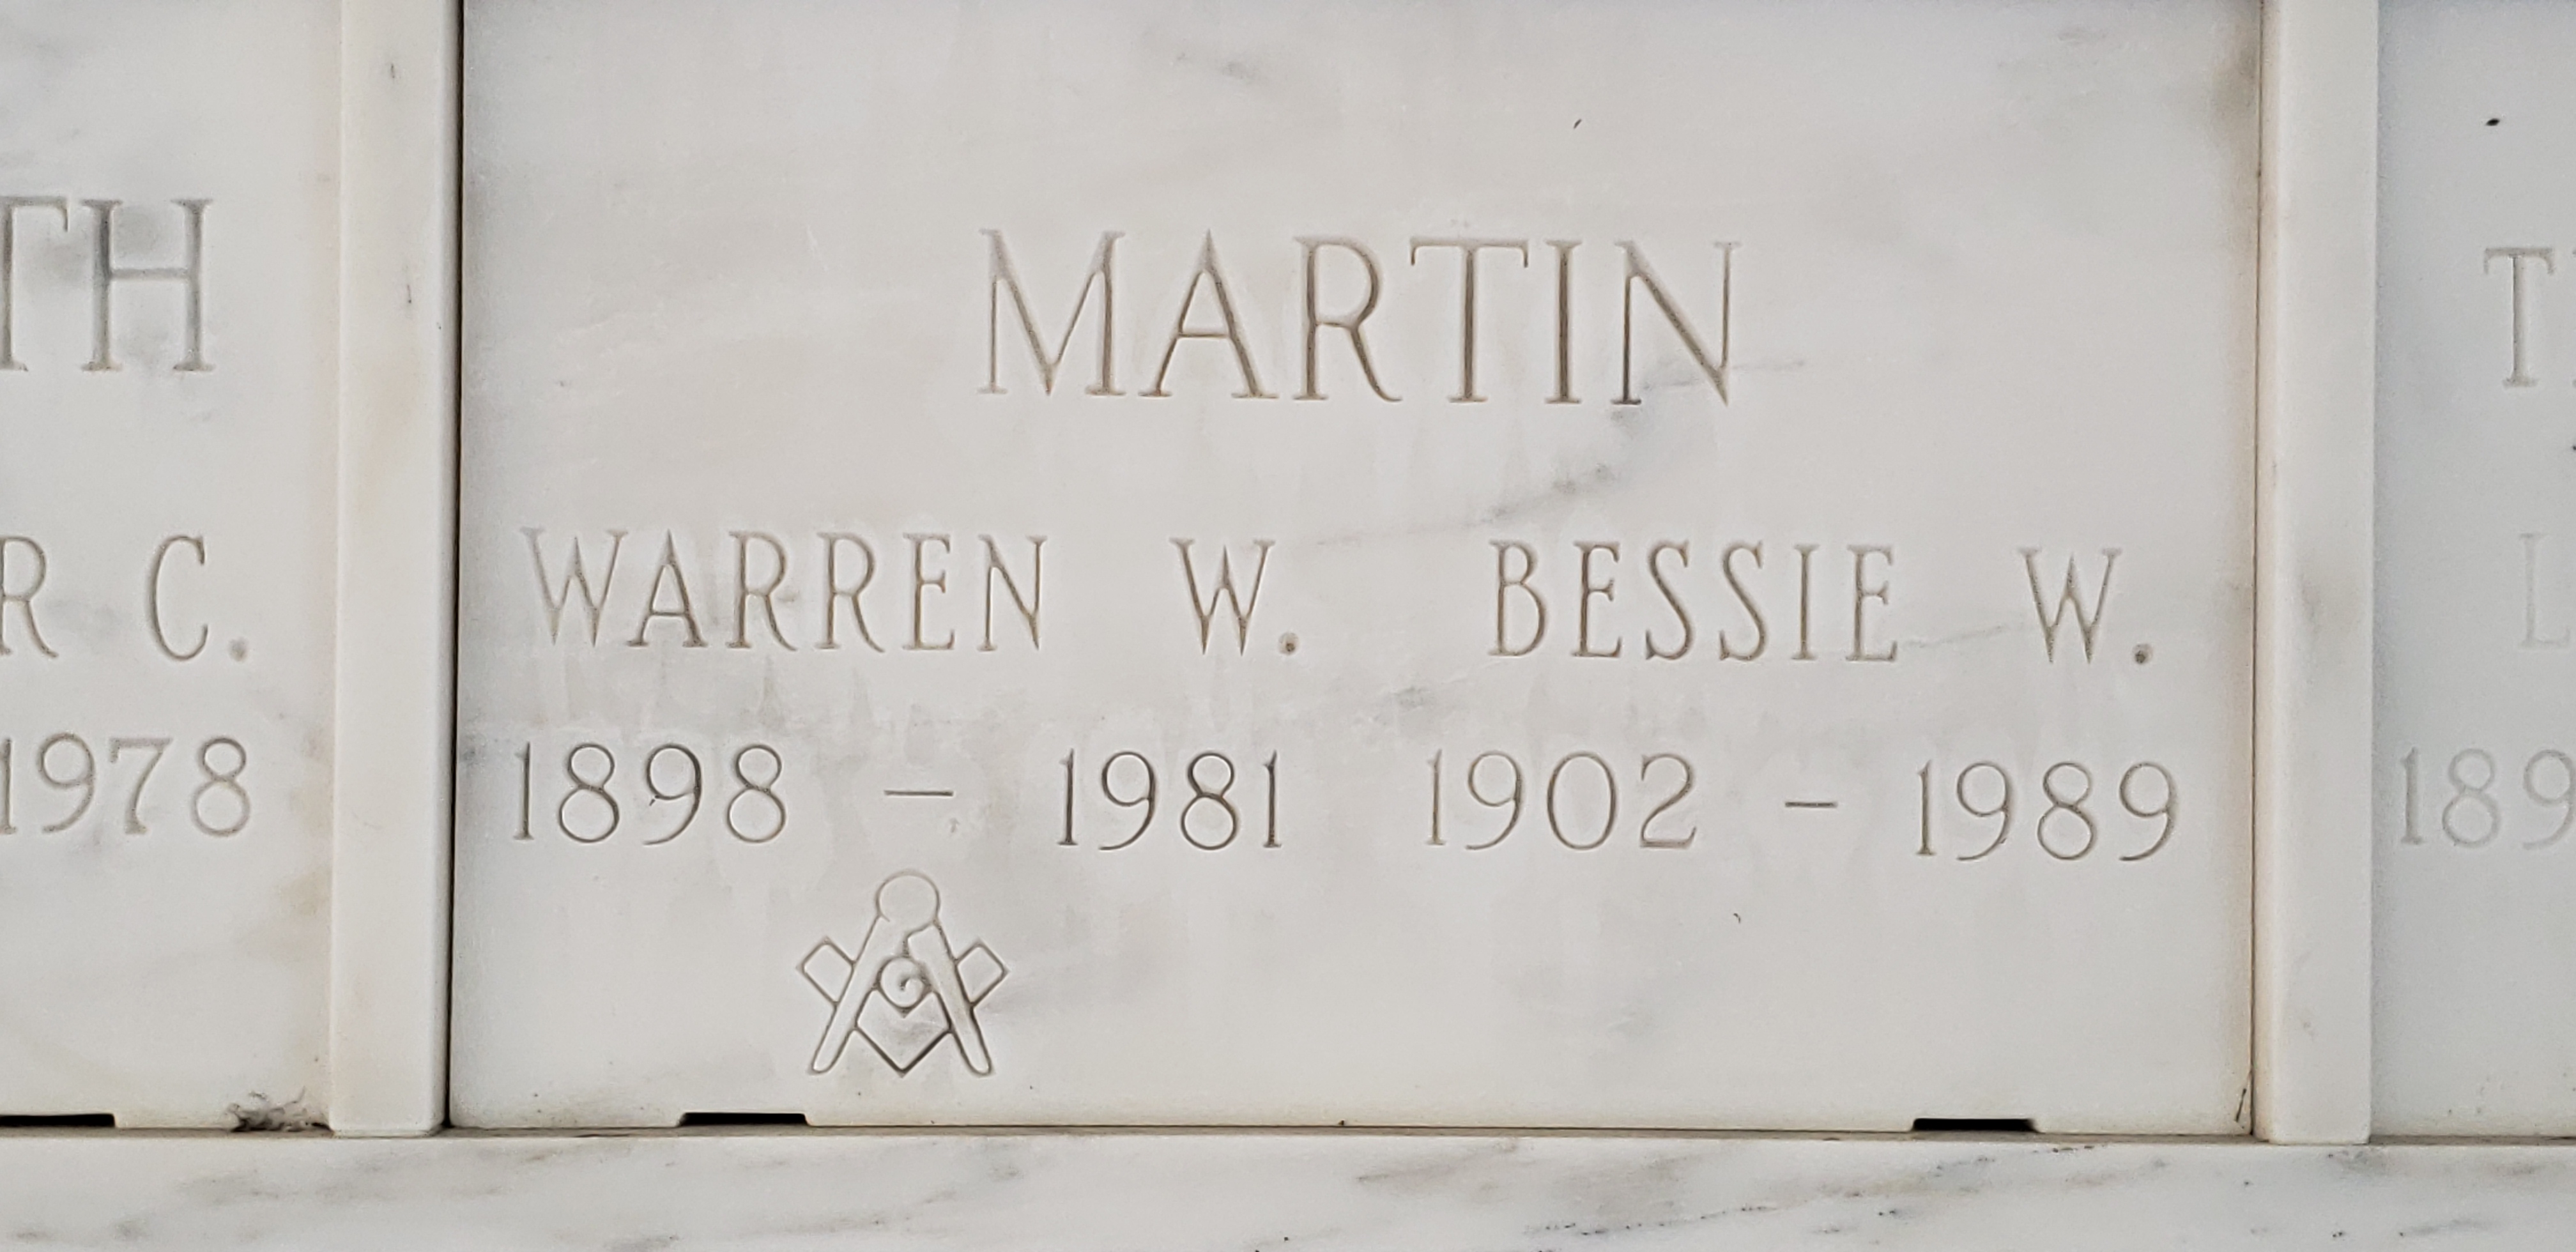 Bessie W Martin